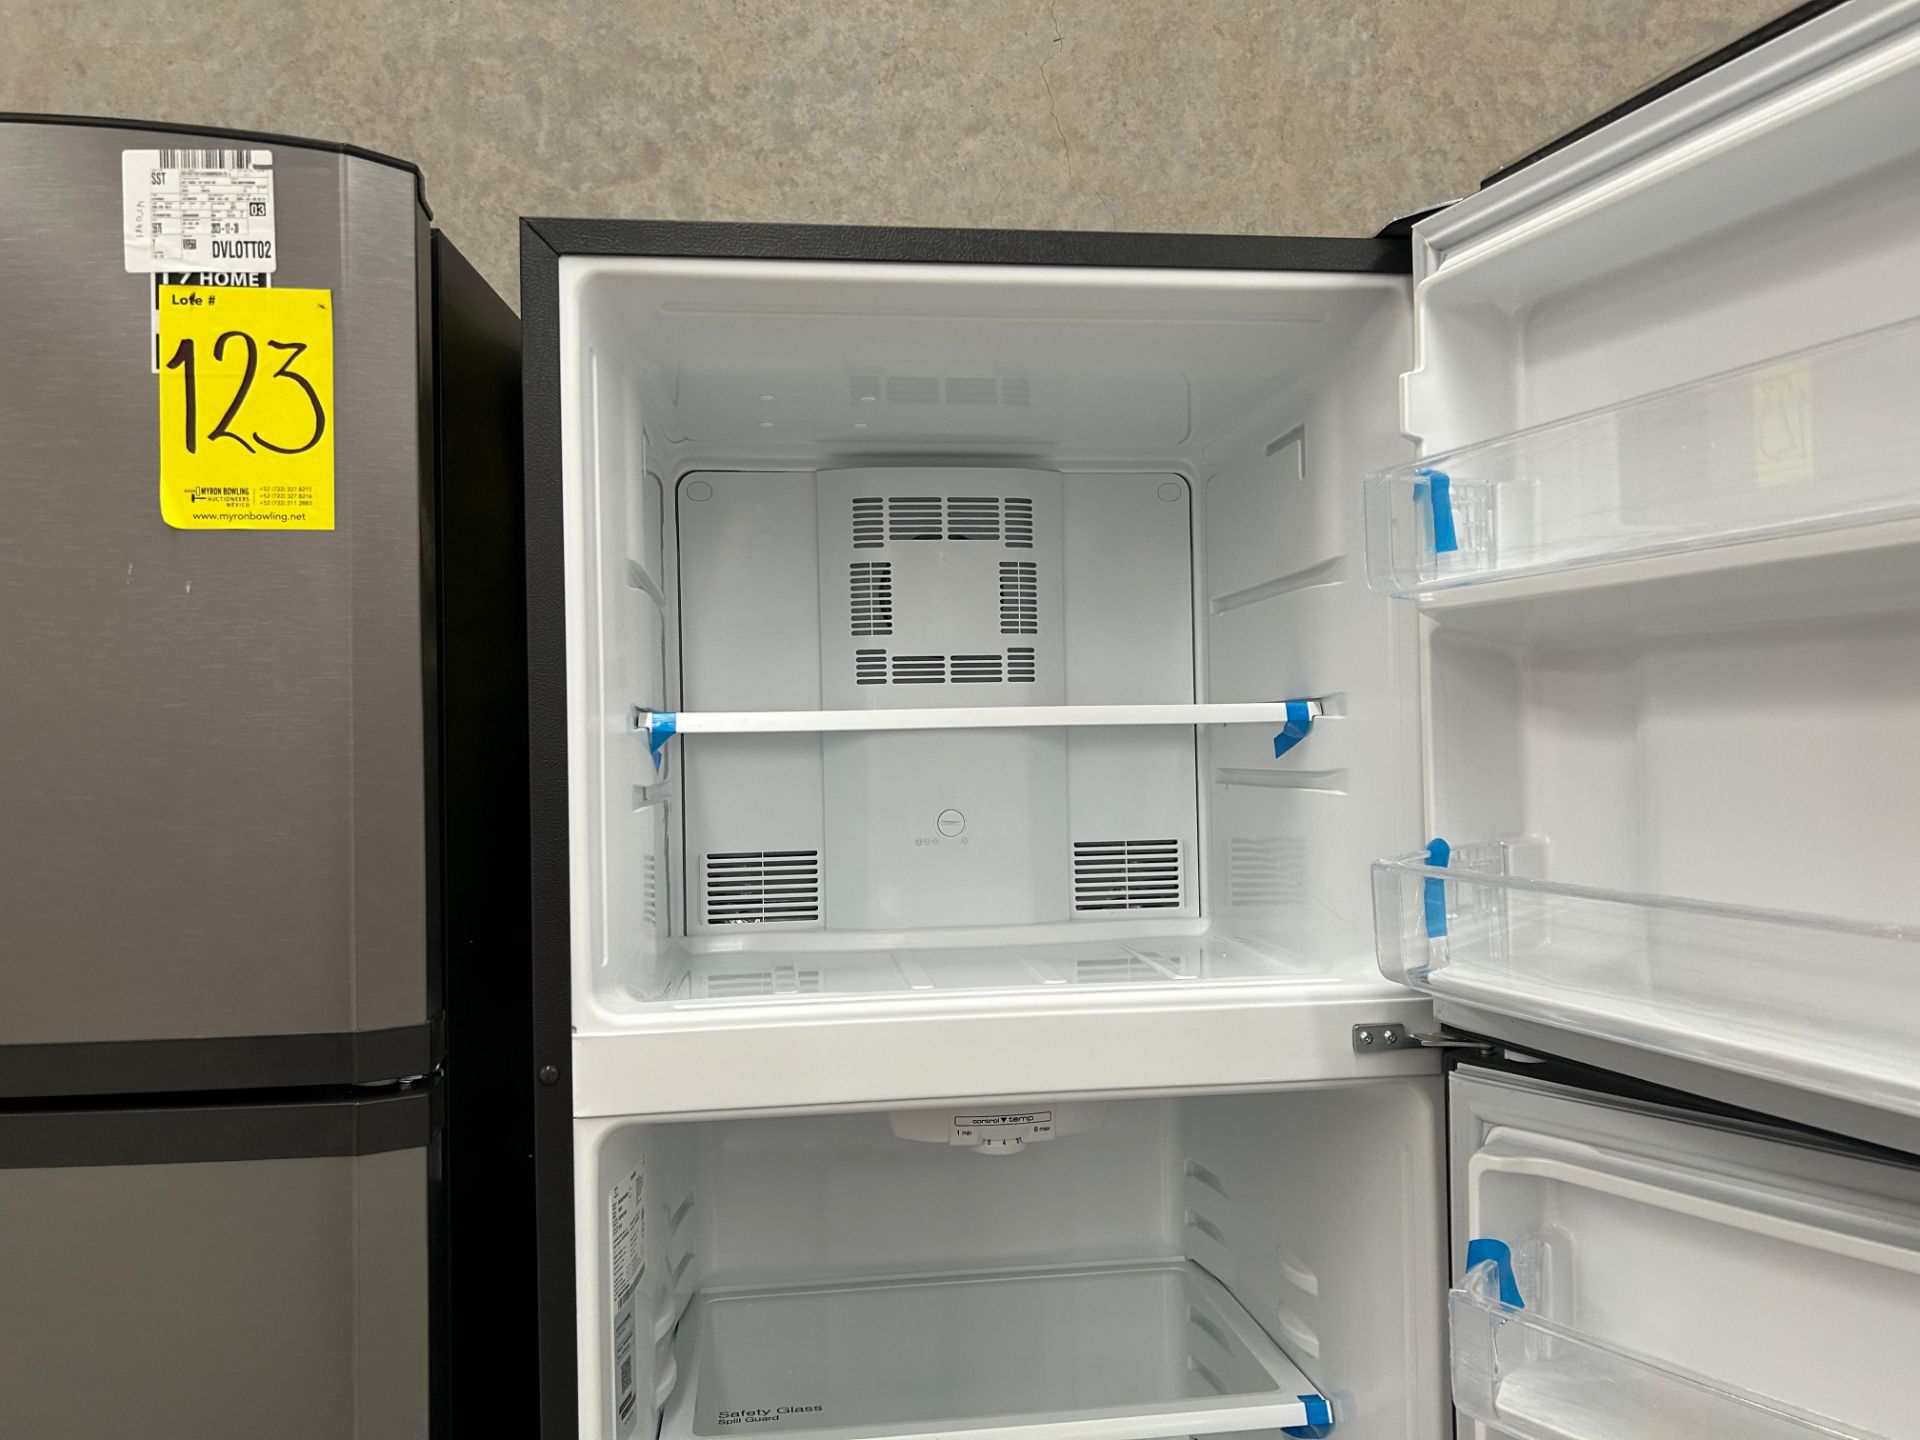 Lote de 2 Refrigeradores contiene: 1 Refrigerador Marca MABE, Modelo RME360PVMRM0, Serie 21969, Col - Image 11 of 15